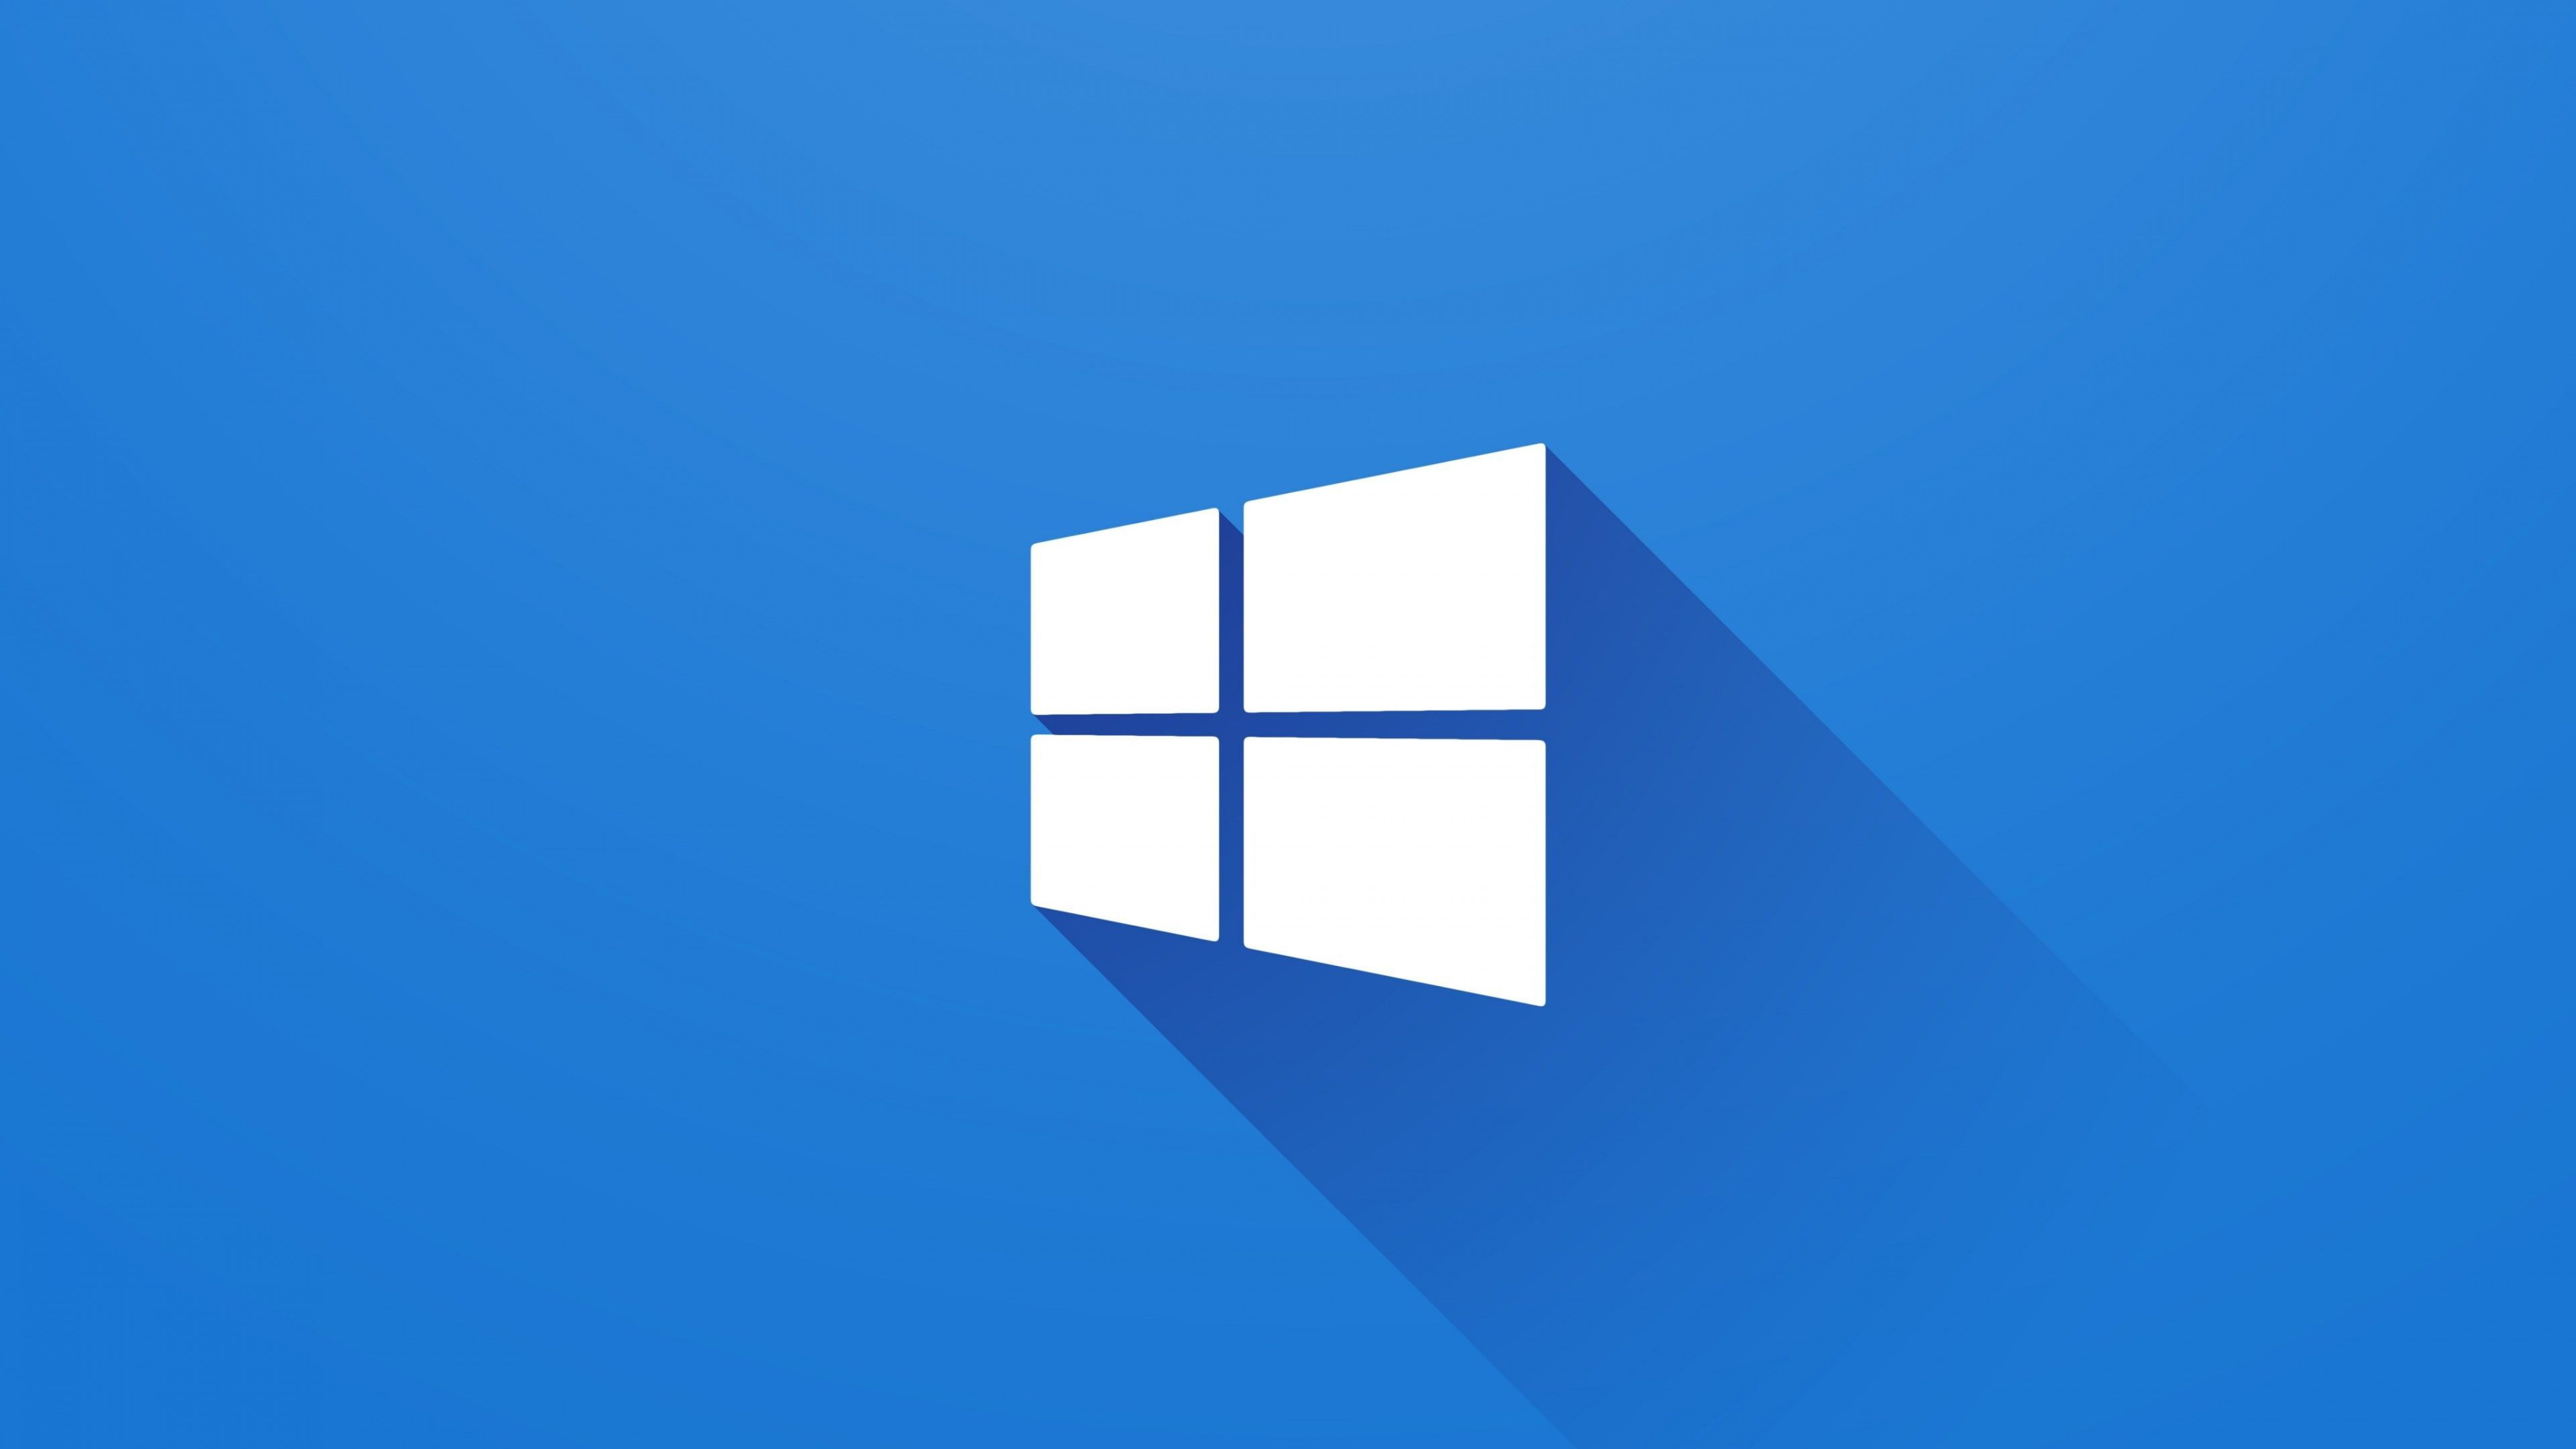 Biểu tượng Windows là biểu tượng không thể thiếu của hệ điều hành Windows. Với hình ảnh vô cùng bắt mắt và ý nghĩa sâu sắc, bạn sẽ cảm nhận được sức mạnh của công nghệ và sự tiện dụng của Windows. Hãy tải và cập nhật ngay hôm nay!